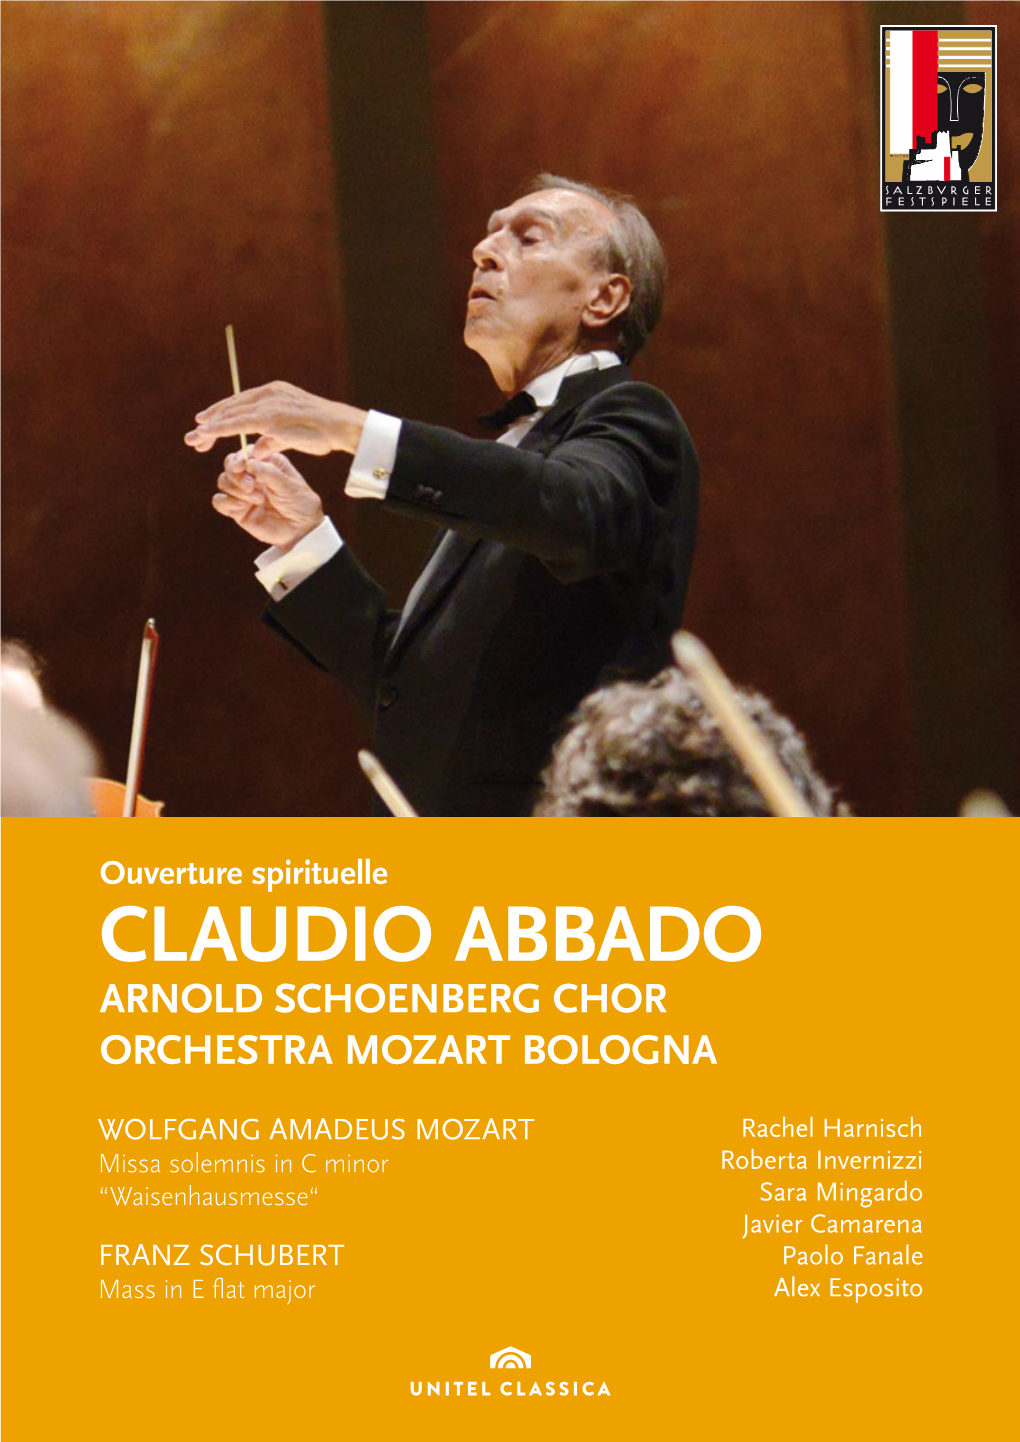 Claudio Abbado Arnold Schoenberg Chor Orchestra Mozart Bologna